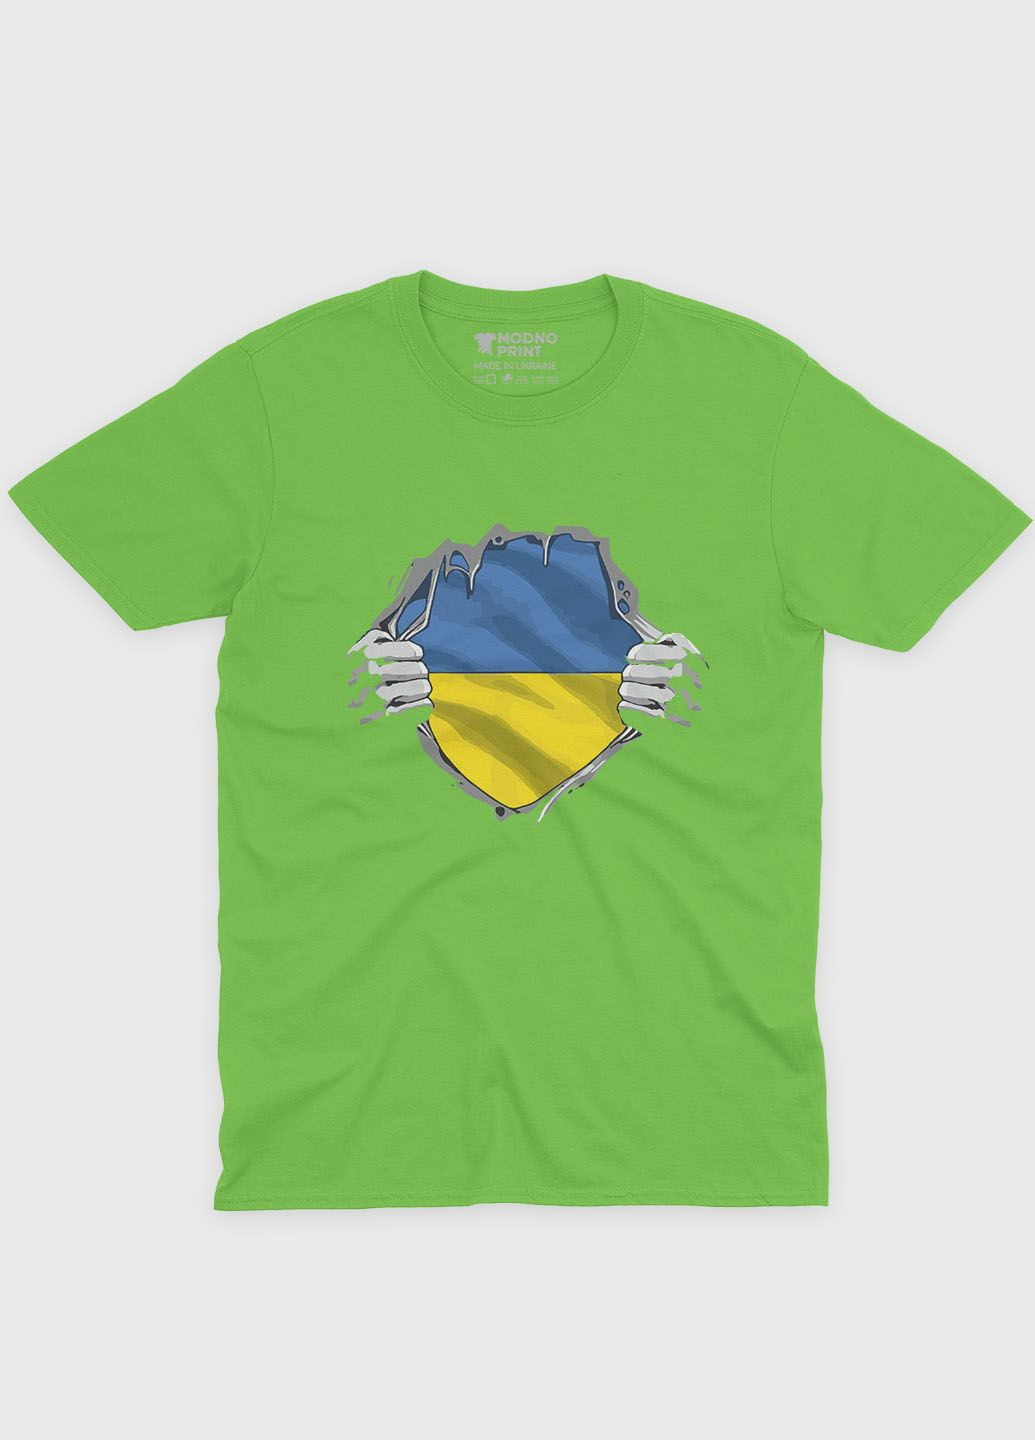 Салатовая демисезонная футболка для мальчика с патриотическим принтом (ts001-3-kiw-005-1-079-b) Modno